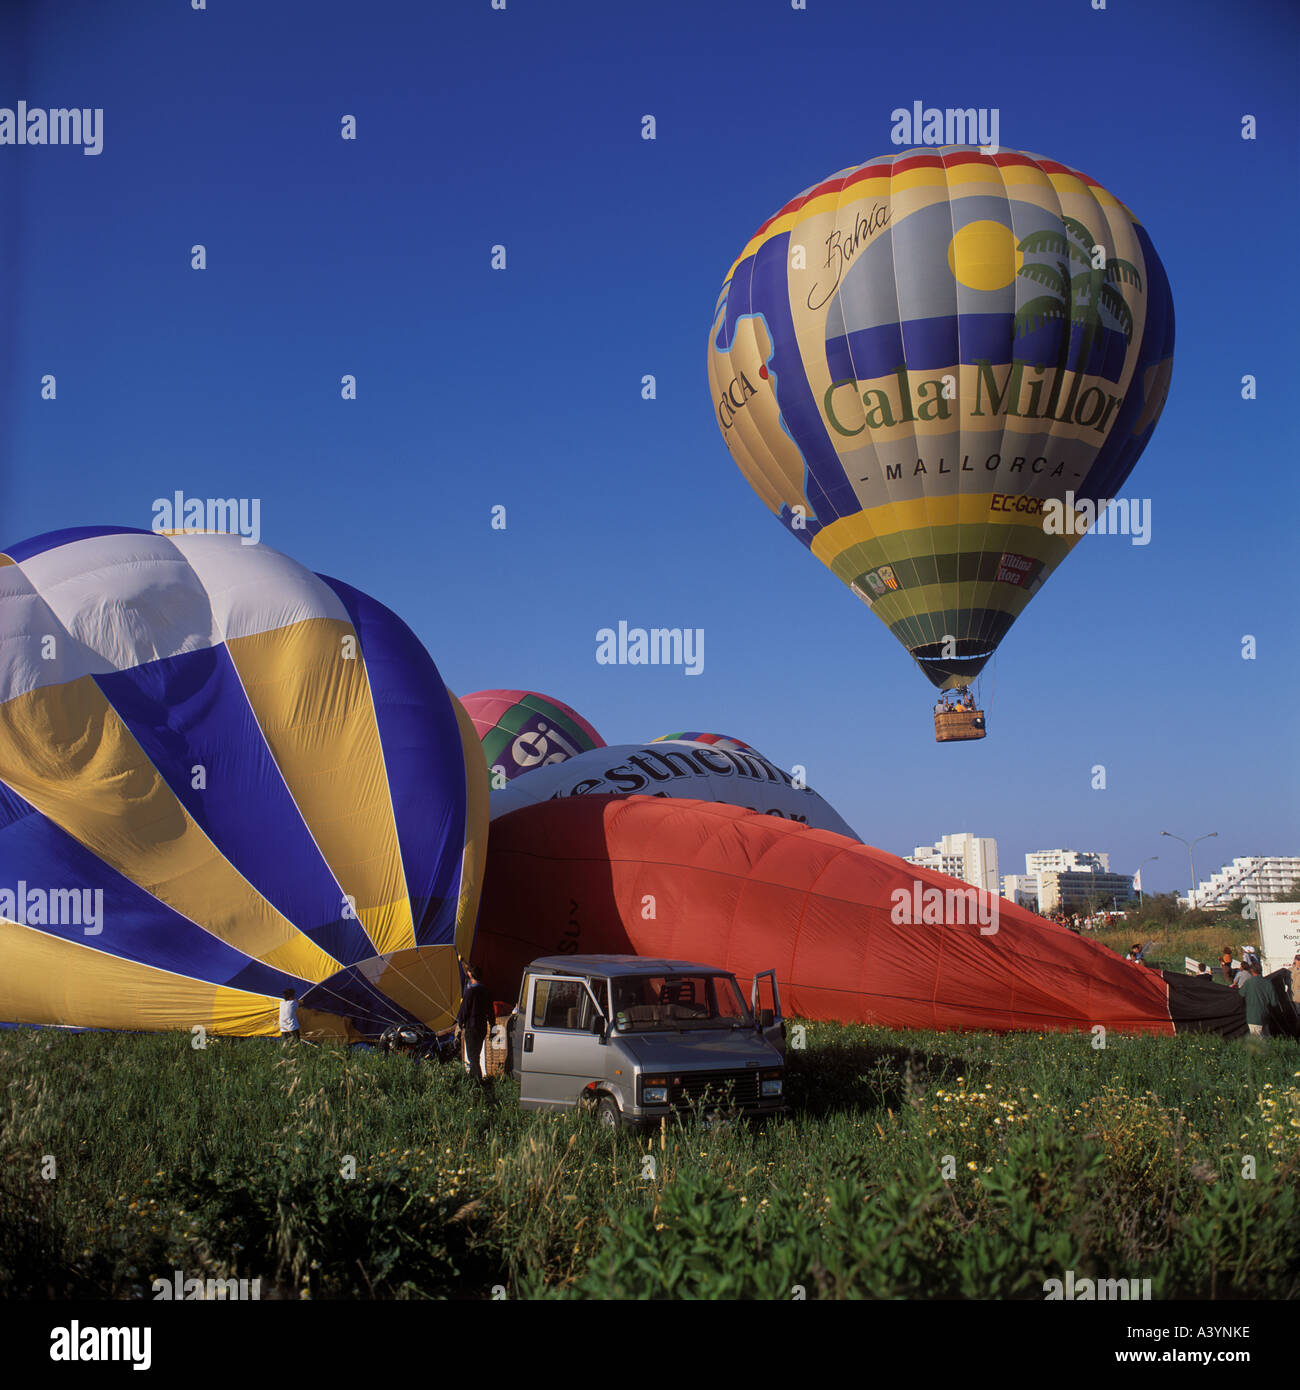 Annual Hot air Balloons regatta in Cala Millor Mallorca Stock Photo